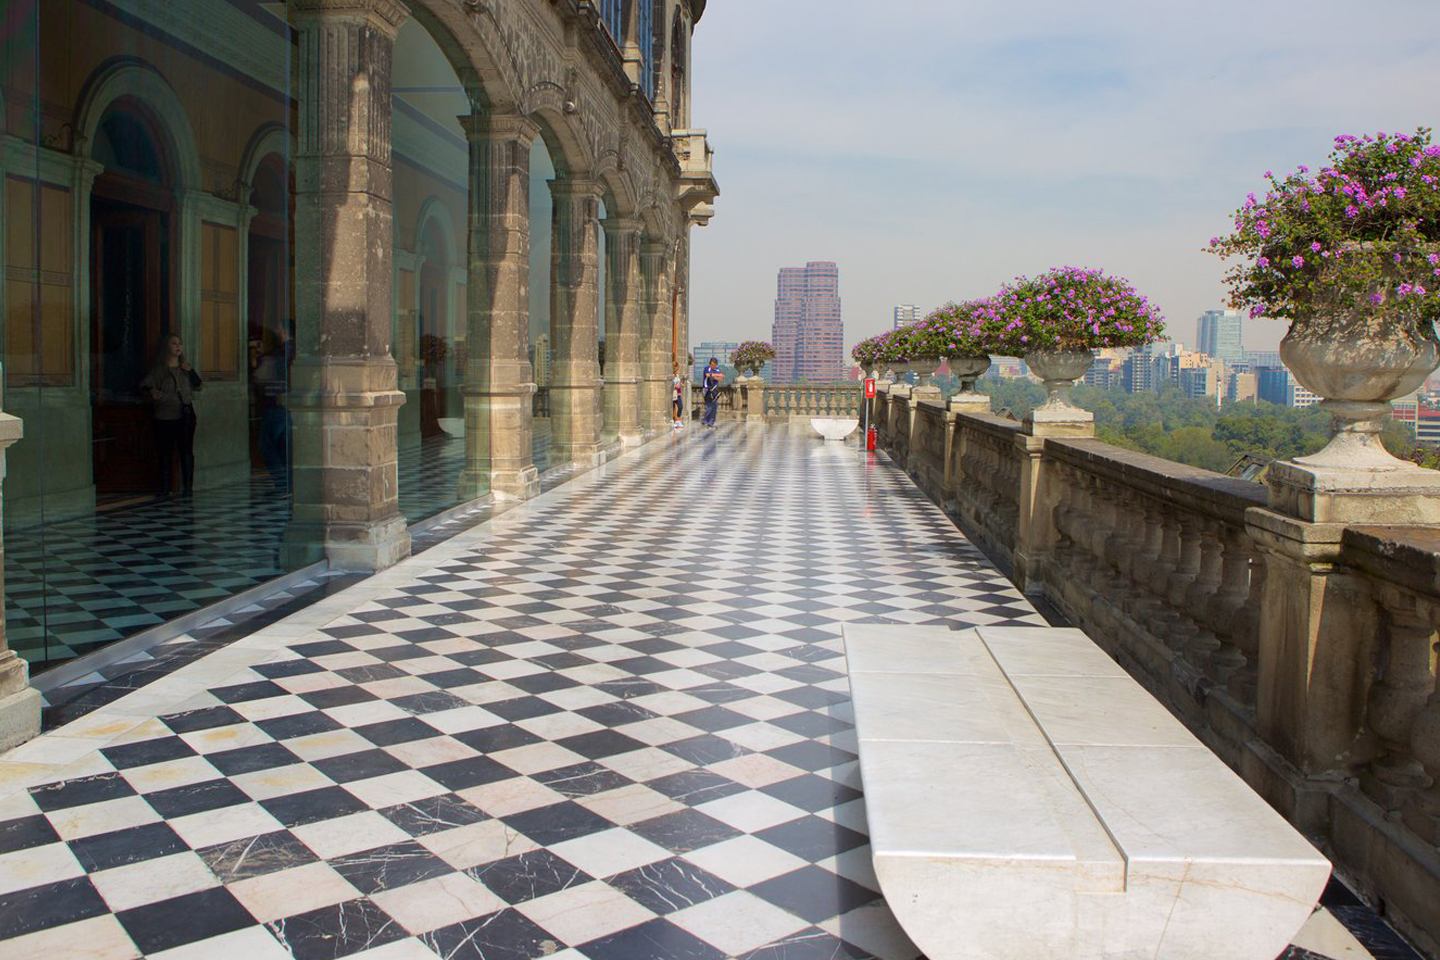 10 Cosas Que Probablemente No Sabías del Castillo de Chapultepec